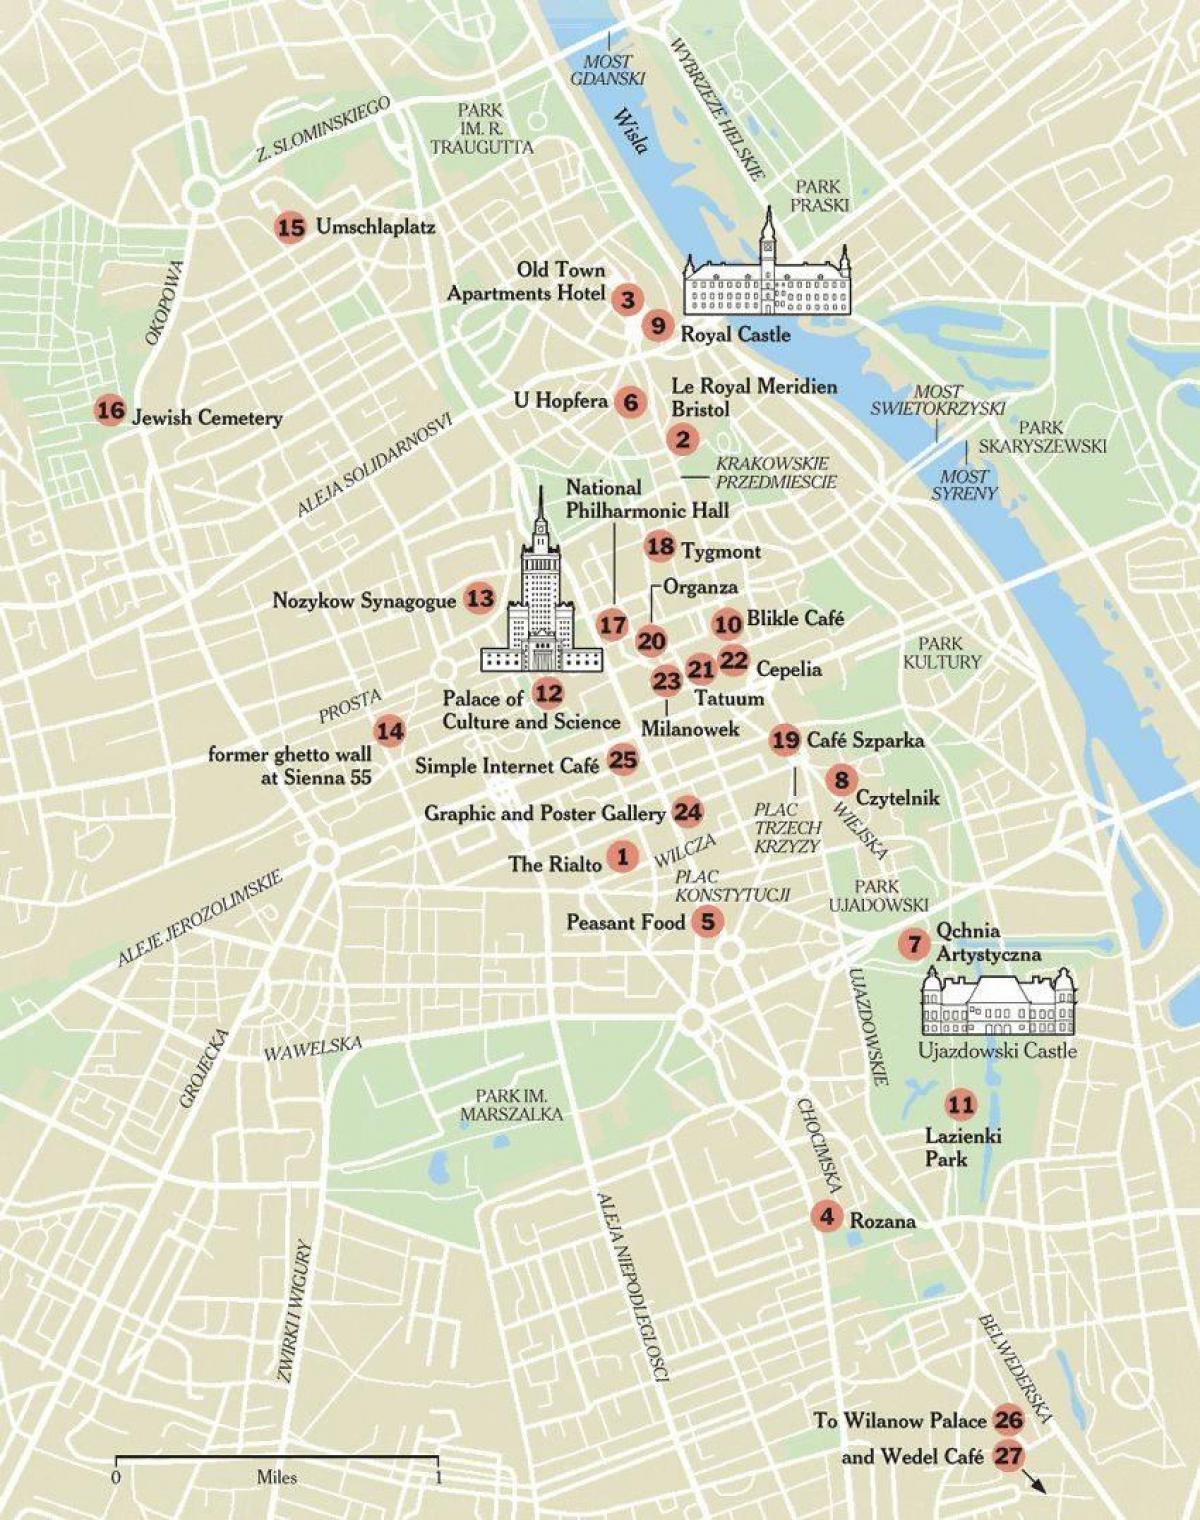 pontos turísticos da cidade de Varsóvia mapa